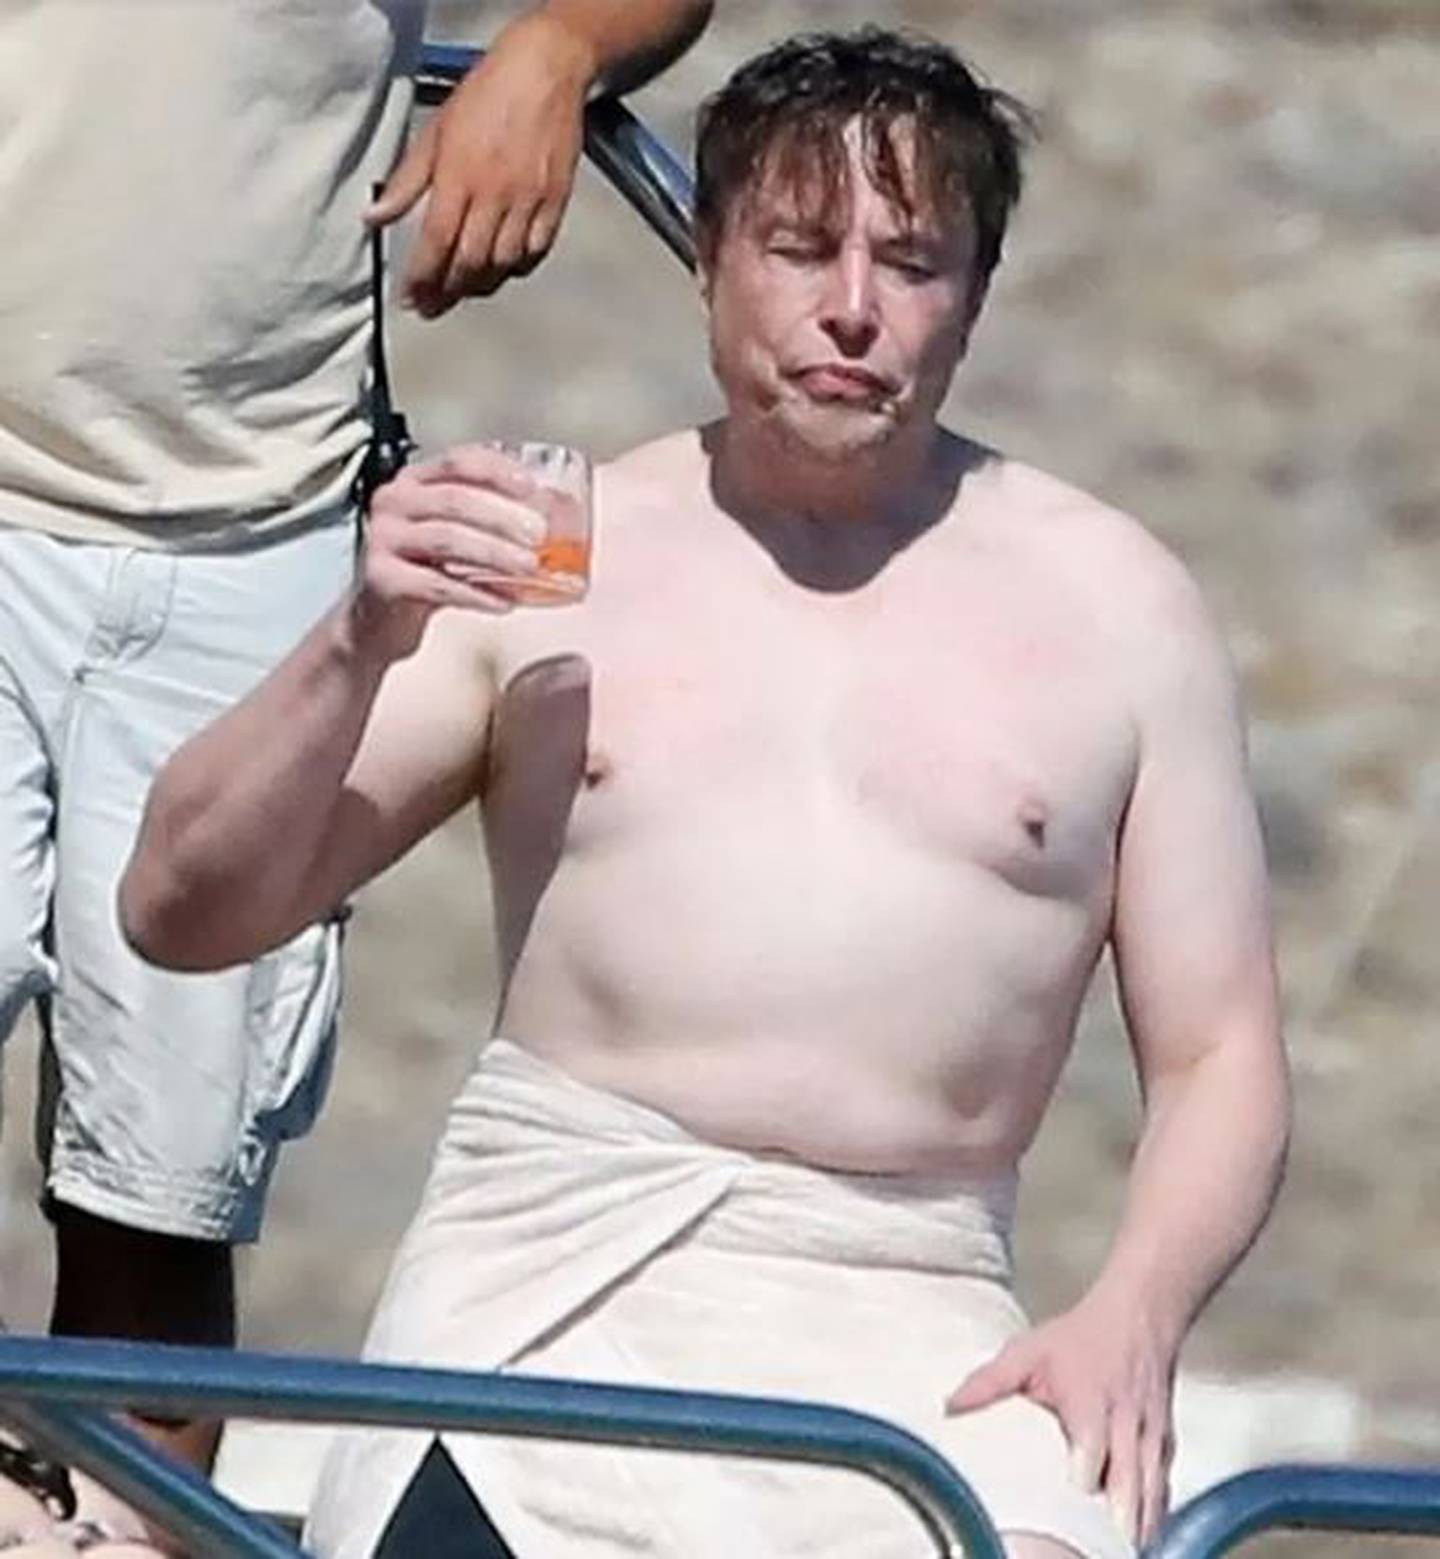 Imagen sin camiseta del multimillonario sudafricano Elon Musk, jefe de Tesla y SpaceX, durante sus vacaciones en la isla griega de Mykonos.